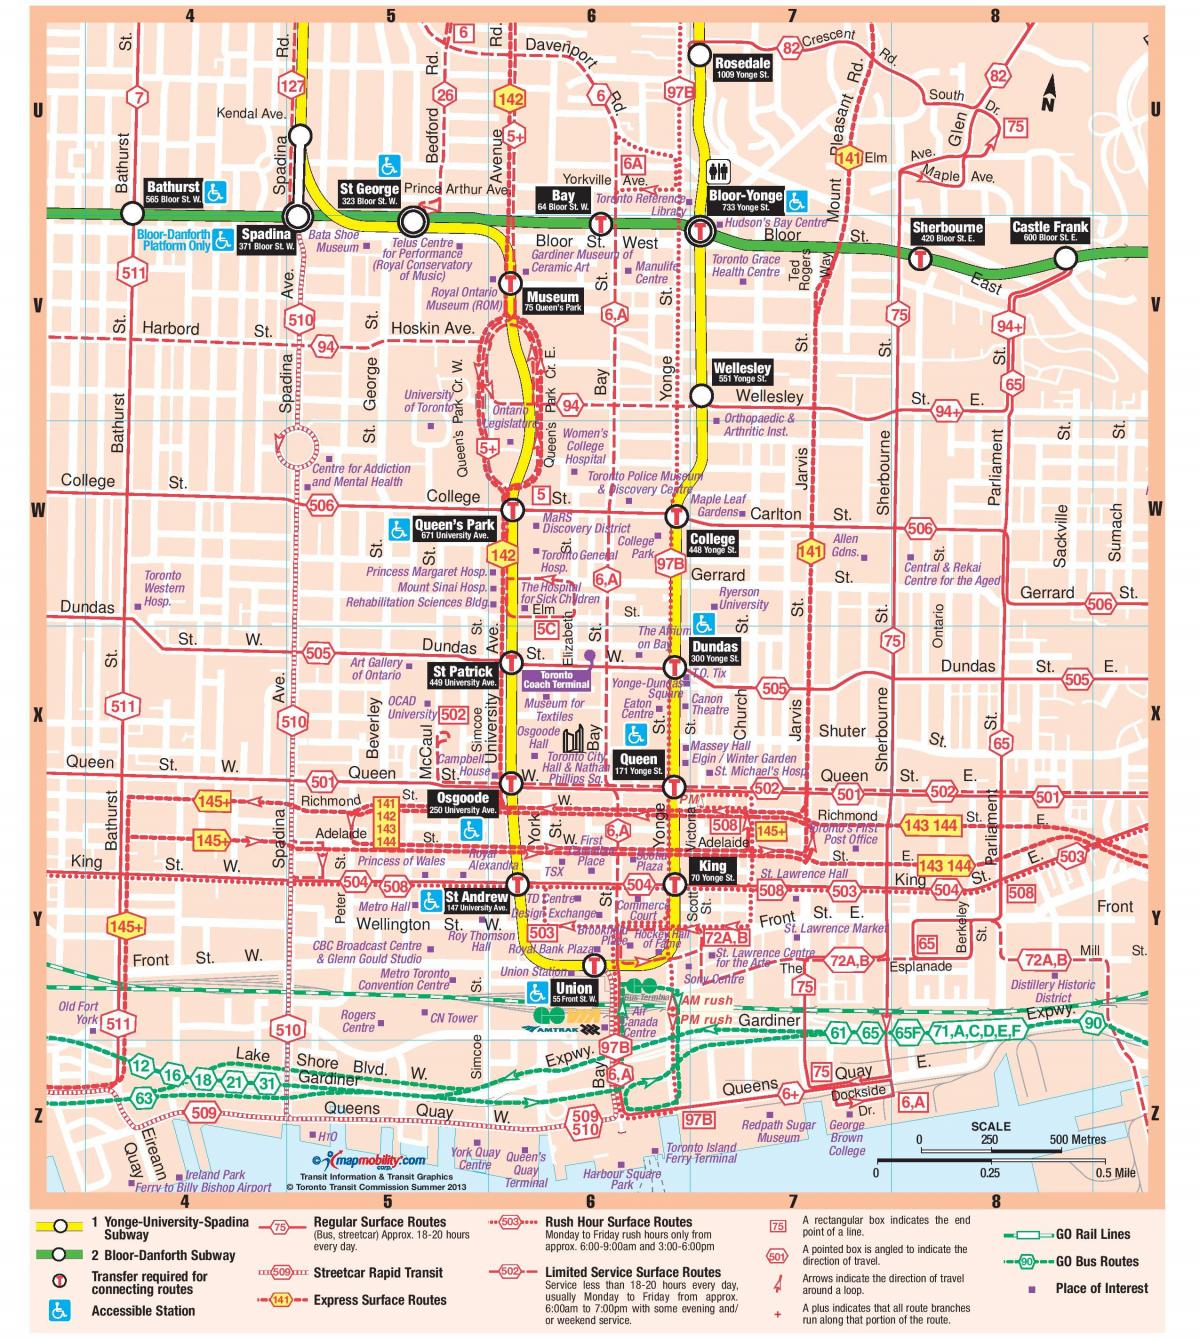 Mapa stanice Metra centre mesta Toronto